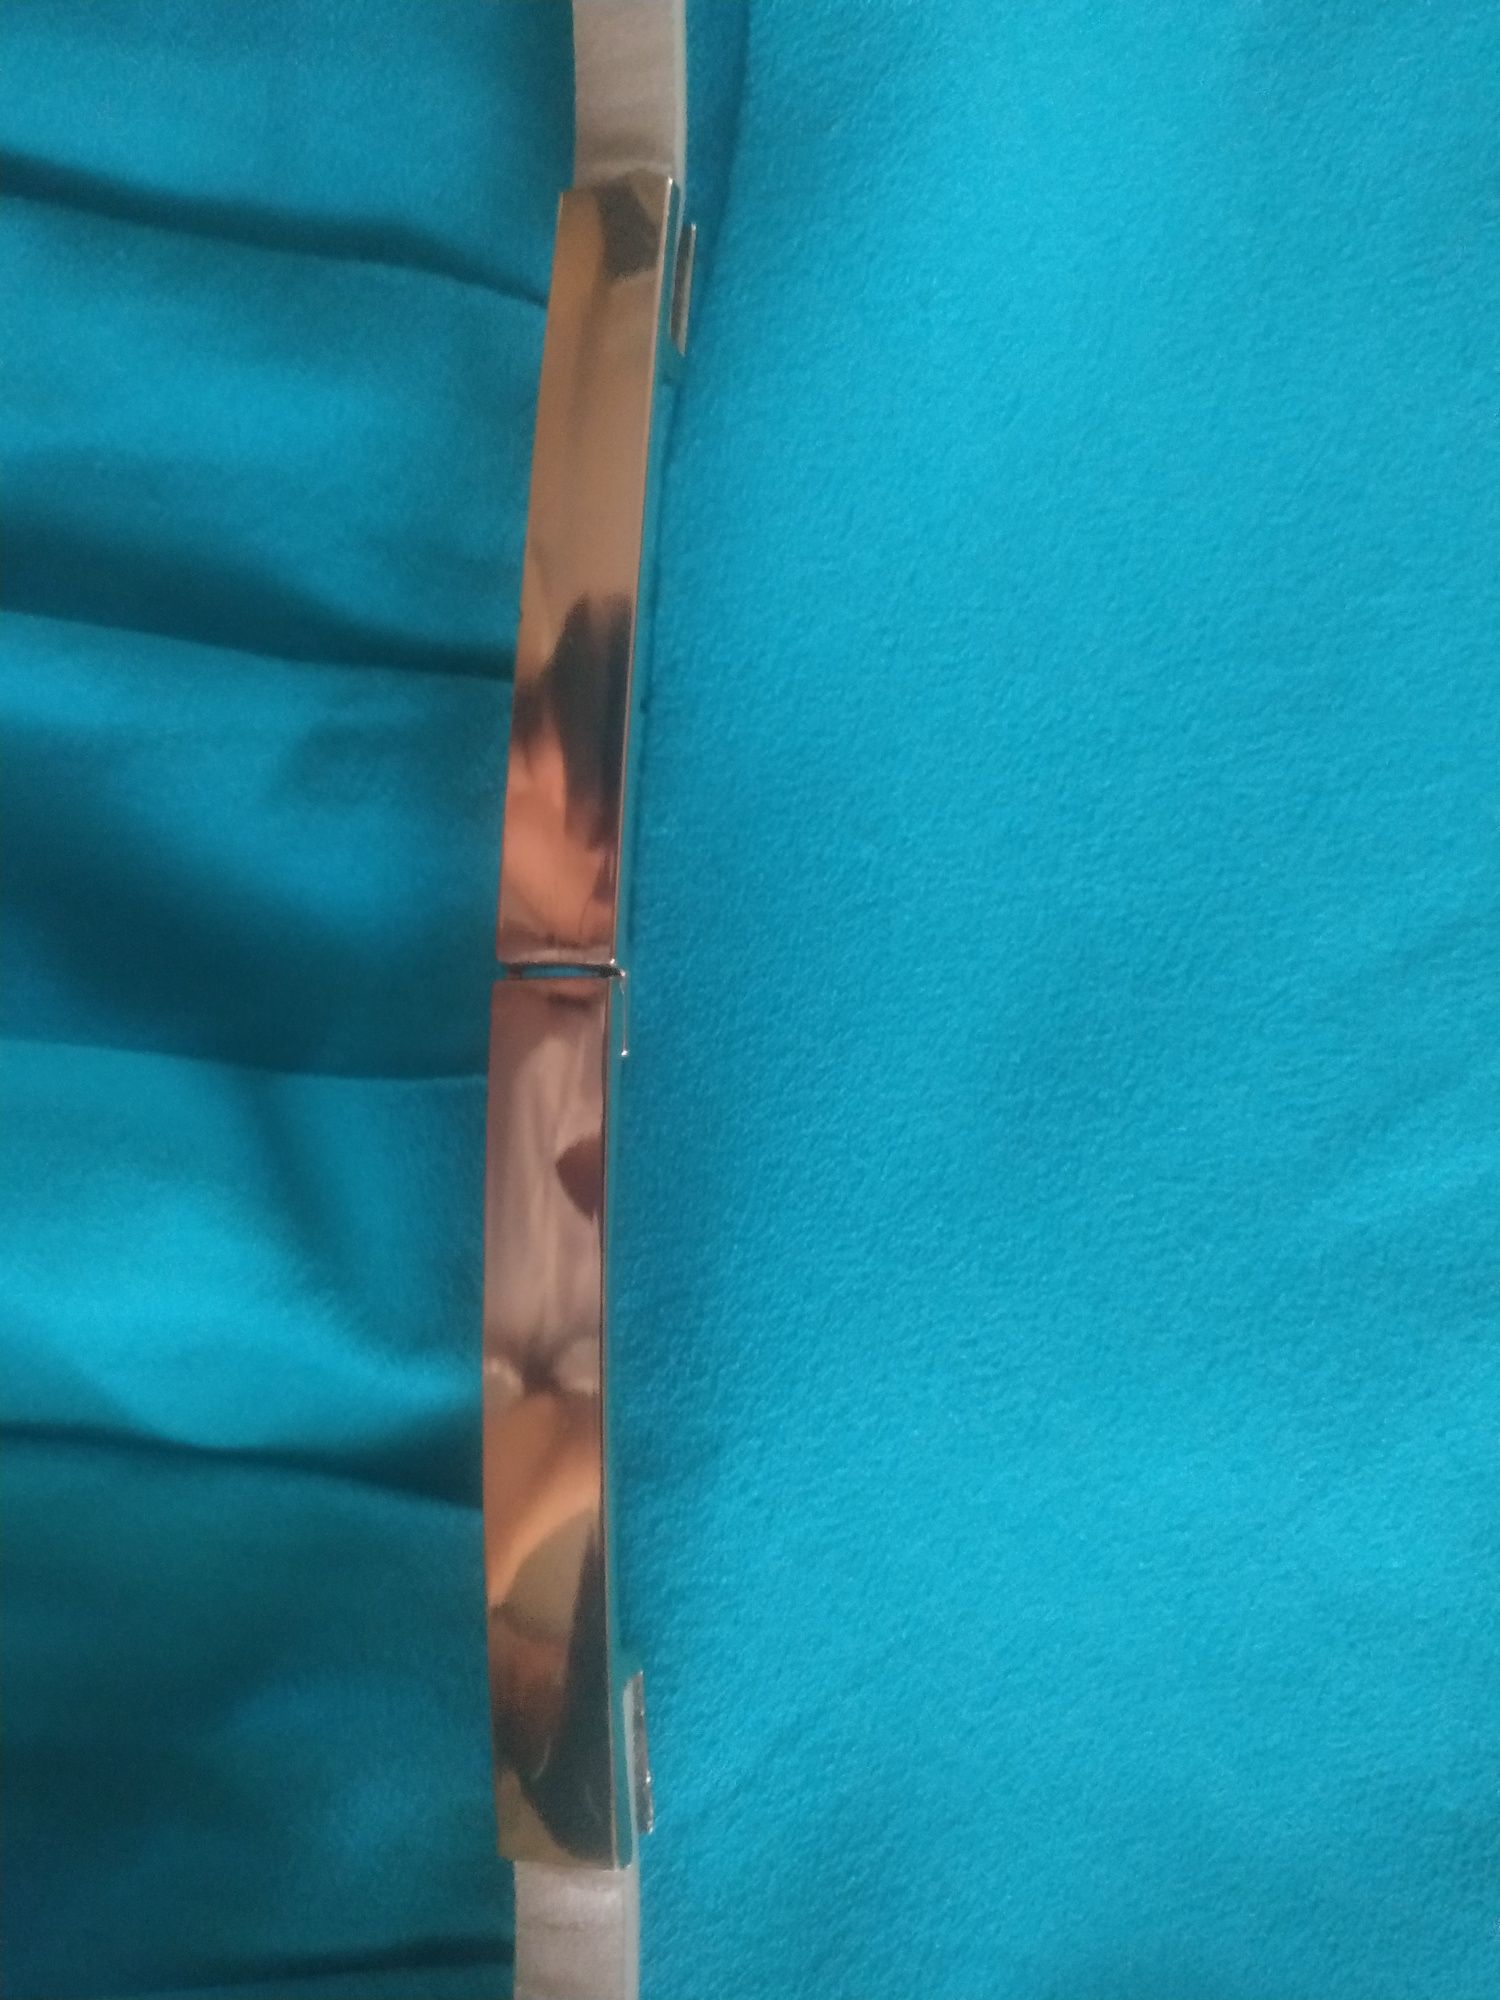 niebieska sukienka krótki rękaw uniwersalna mohito rozmiar 34 pasek